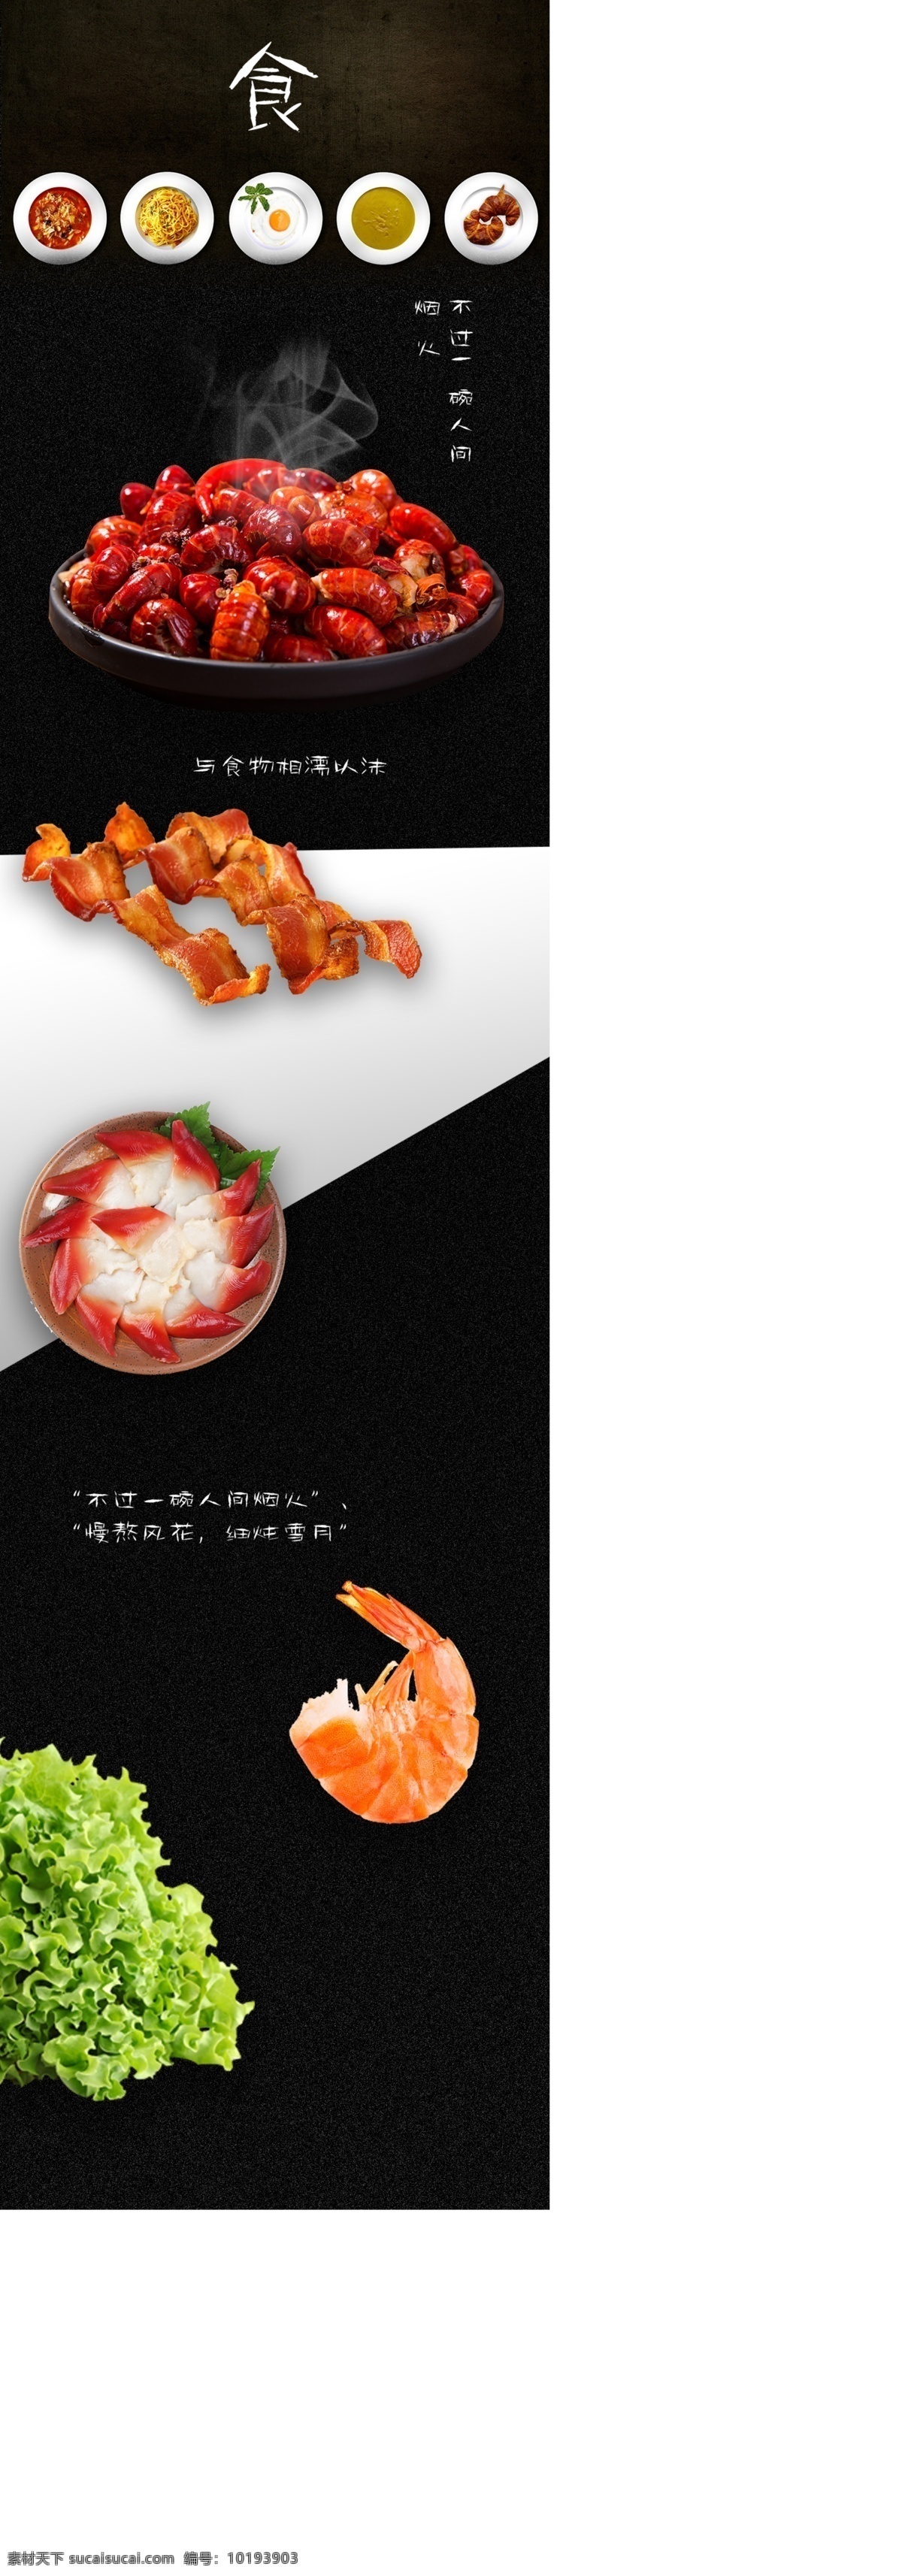 食物 网页设计 排版 龙虾 烧烤 海鲜 网页